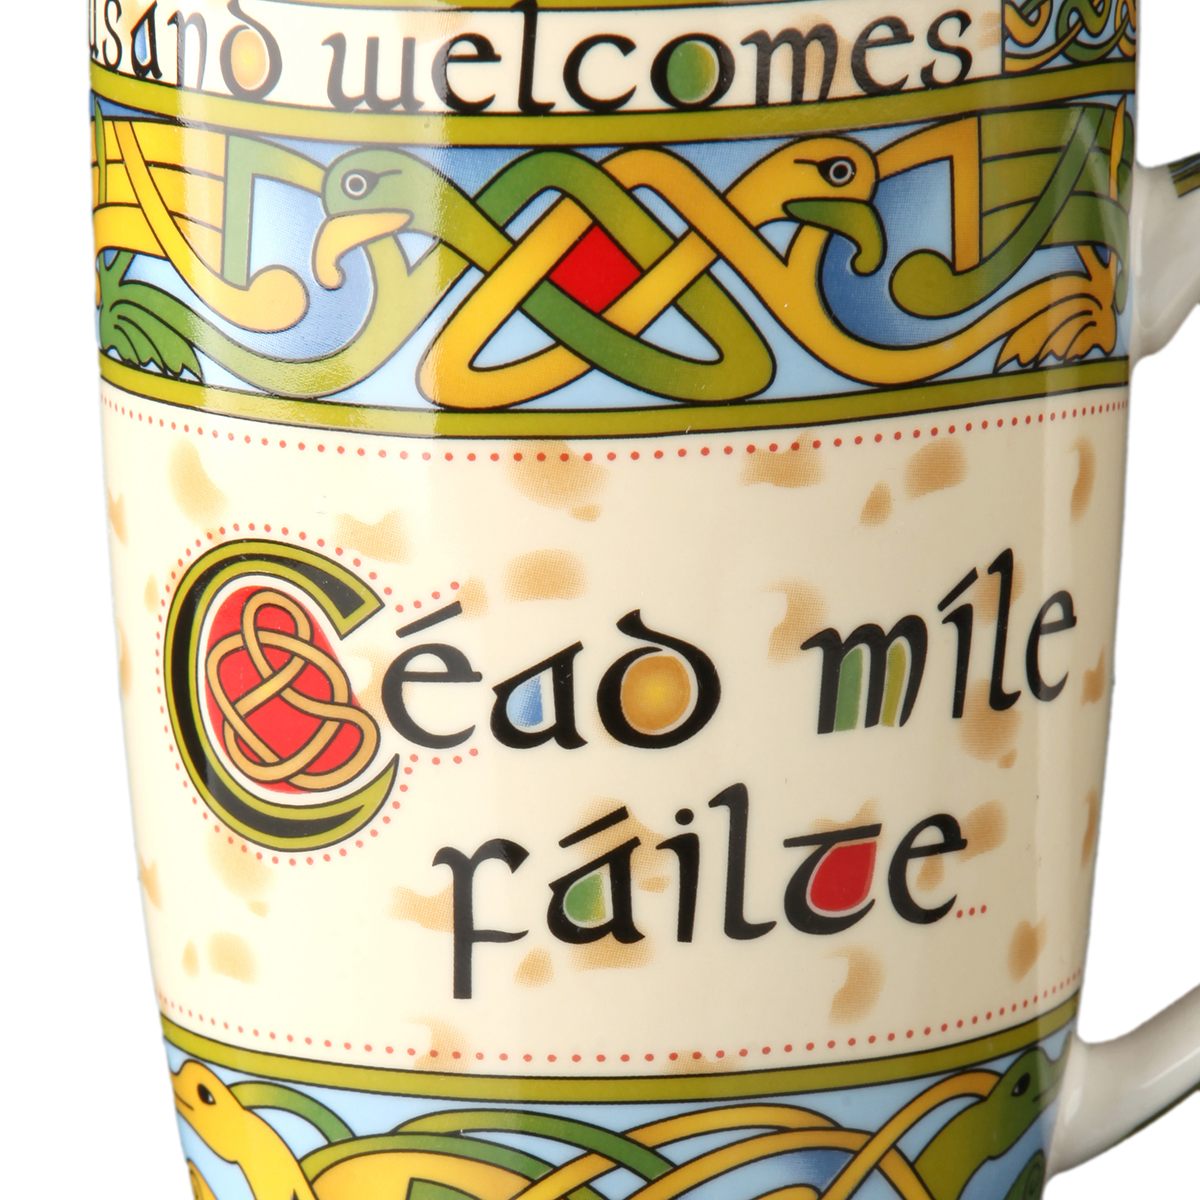 Cead Mile Failte - tausendfach Willkommen - Keltischer Kaffeebecher aus Irland